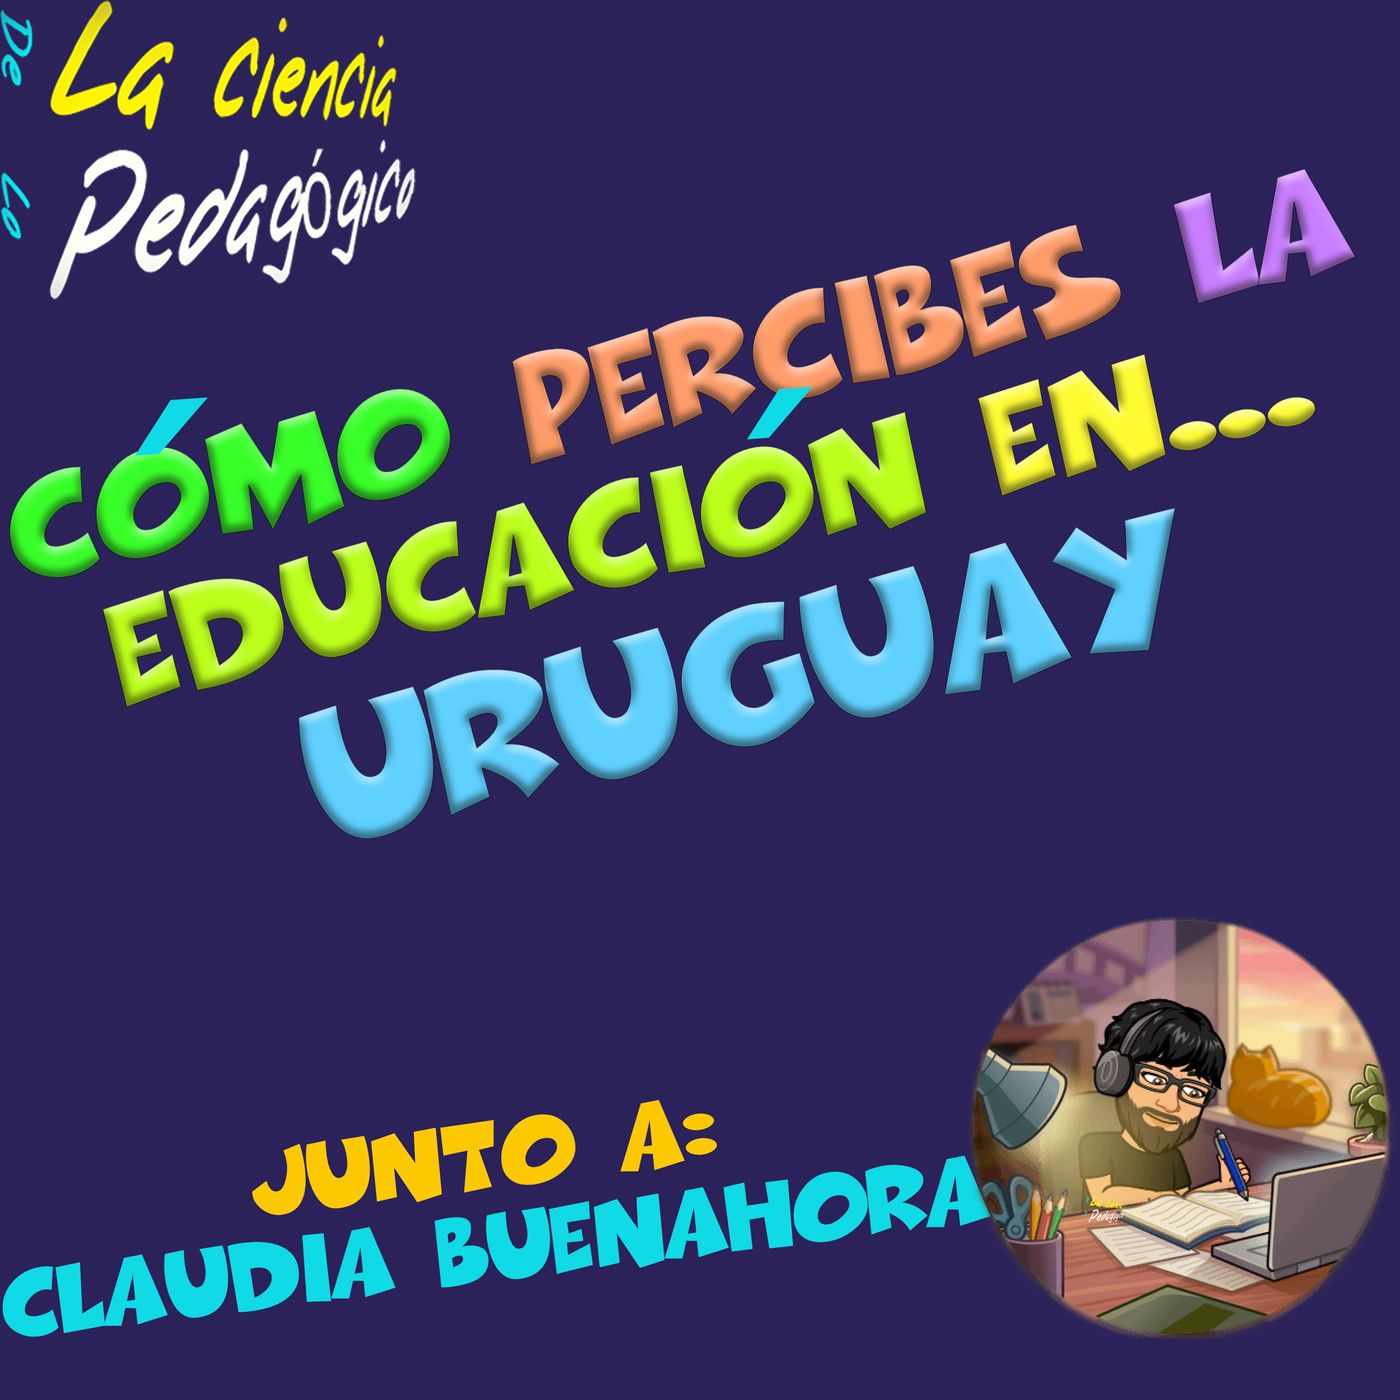 58. Cómo percibes la educación en... Uruguay.